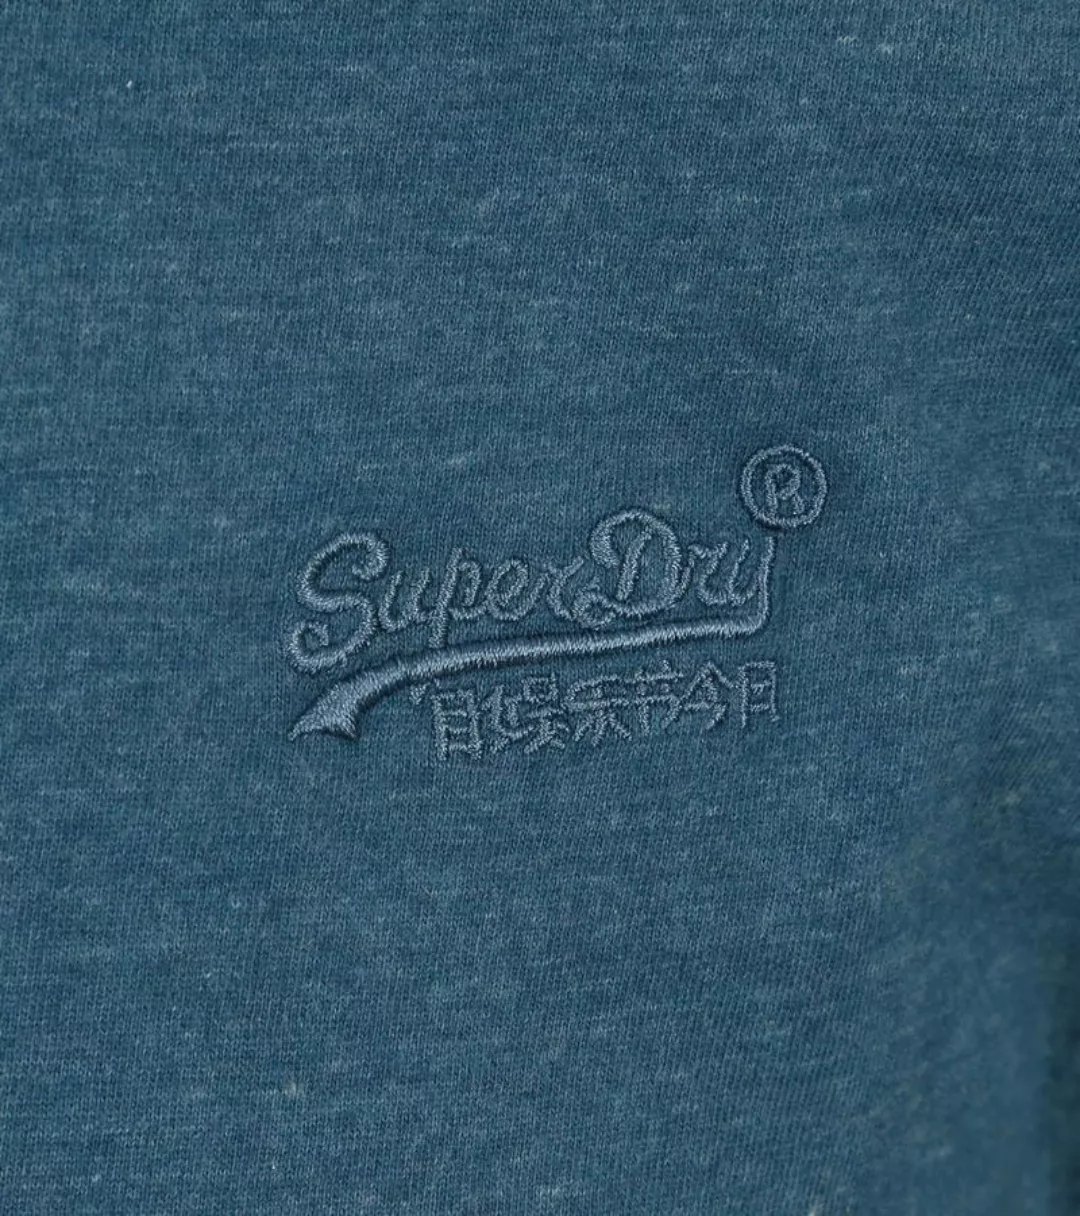 Superdry Classic T Shirt Melange Blau - Größe L günstig online kaufen